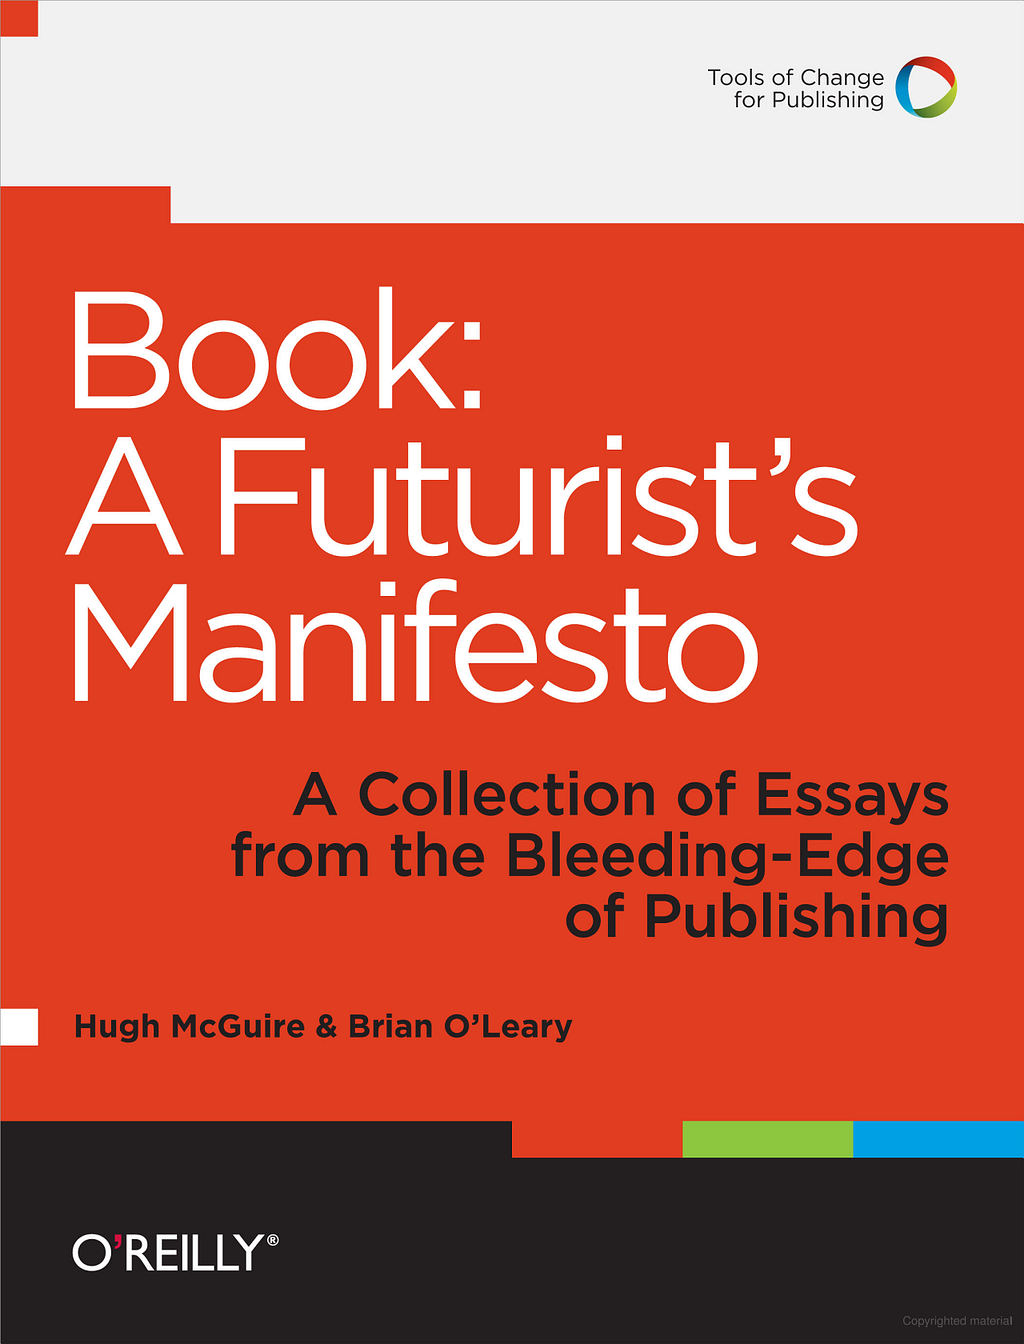 Cover image for “Book: A Futurist’s Manifesto”